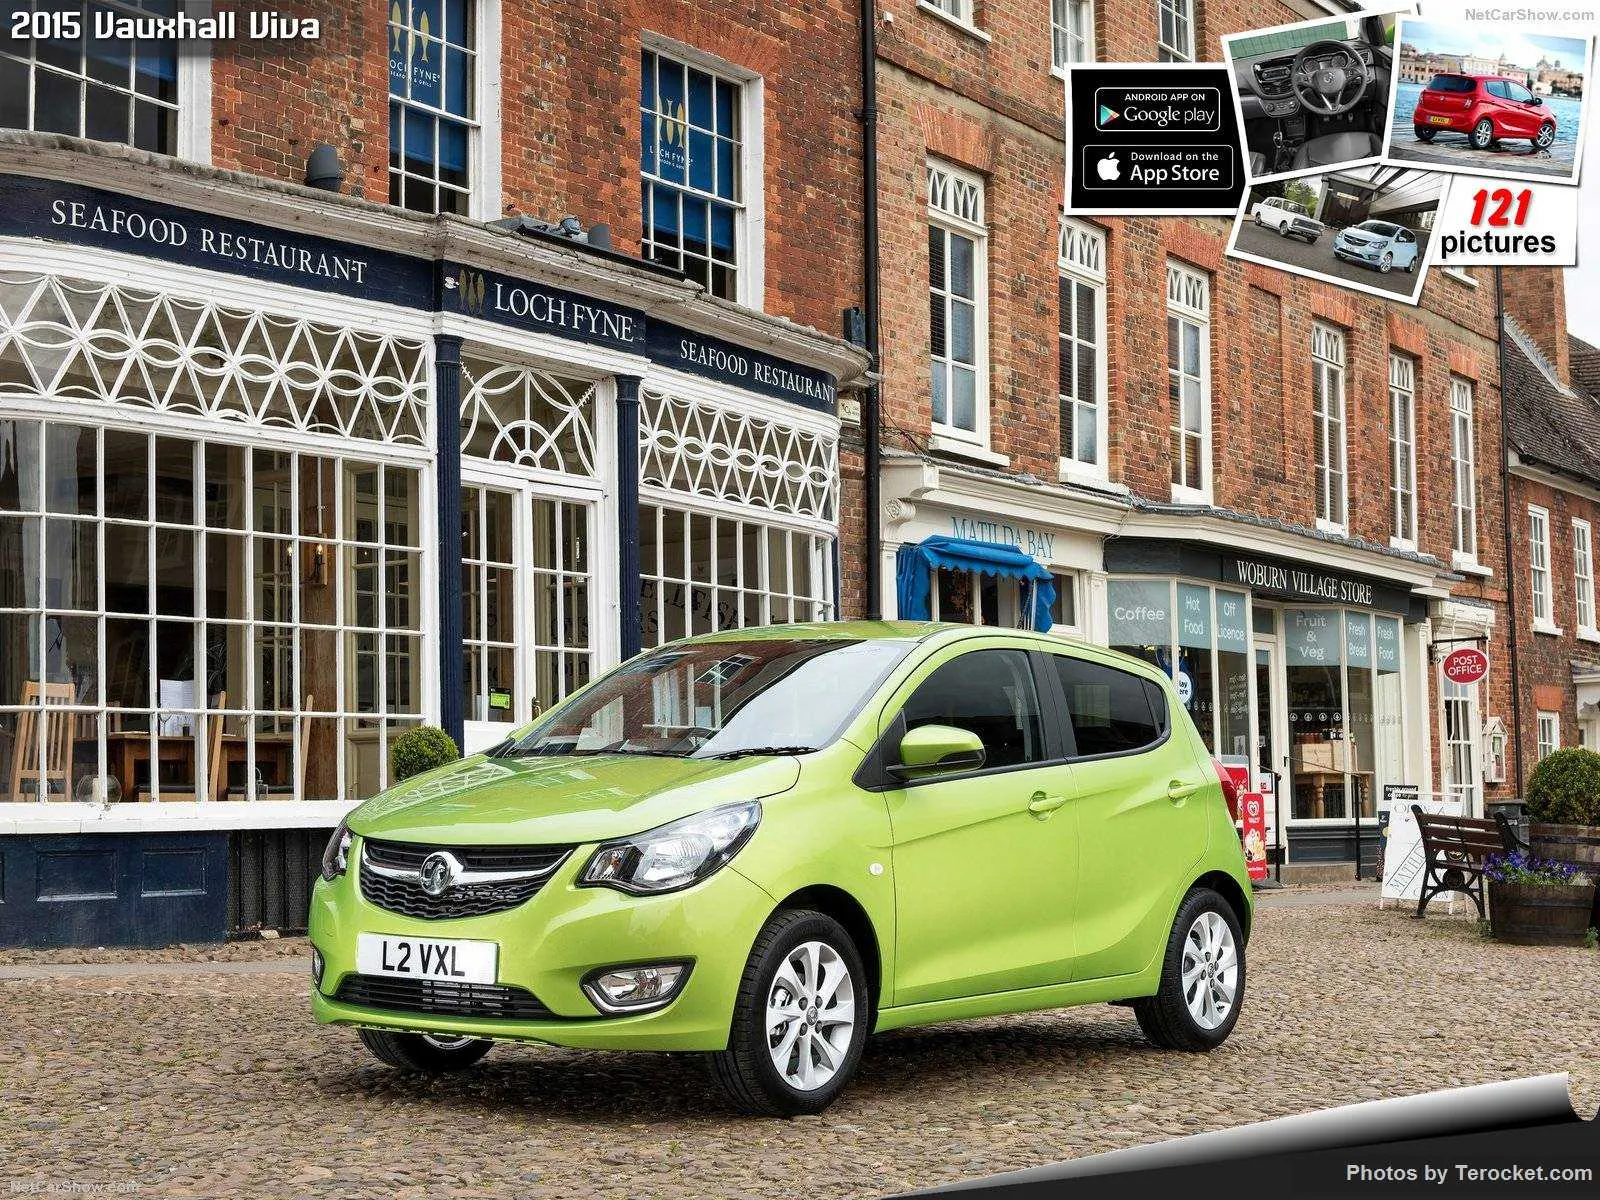 Hình ảnh xe ô tô Vauxhall Viva 2015 & nội ngoại thất